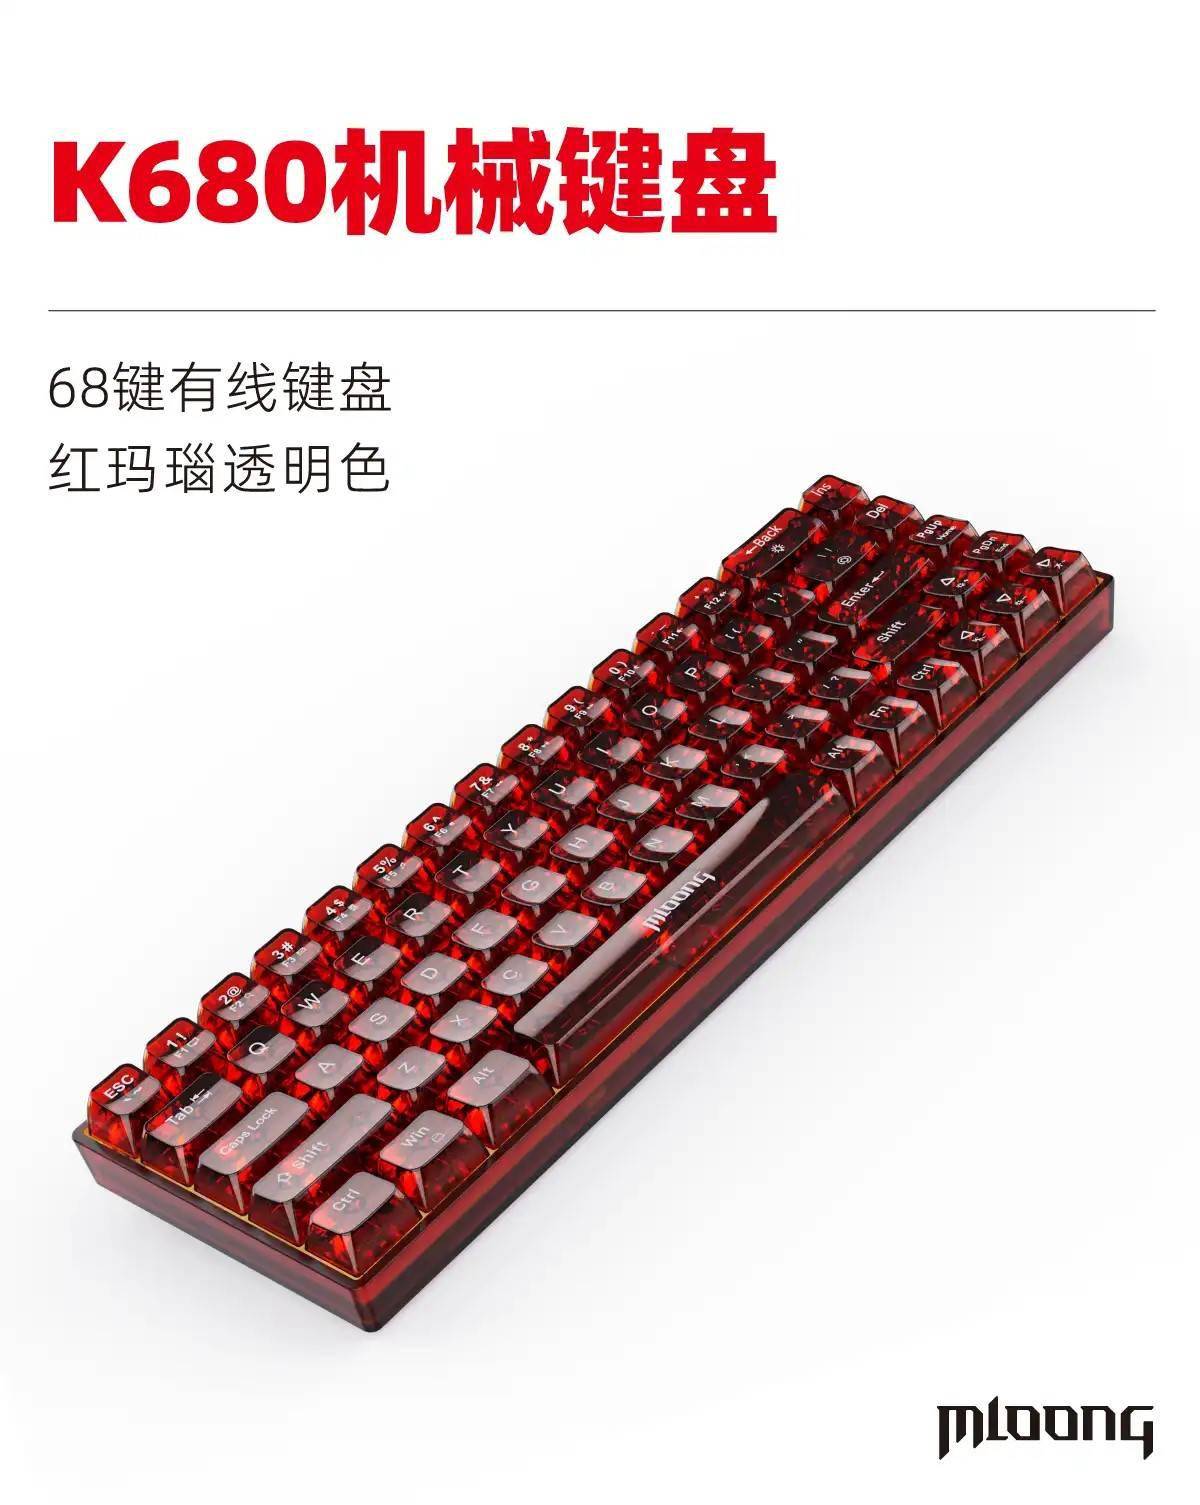 名龙堂推出K680有线机械键盘 拥有5000万次敲击寿命